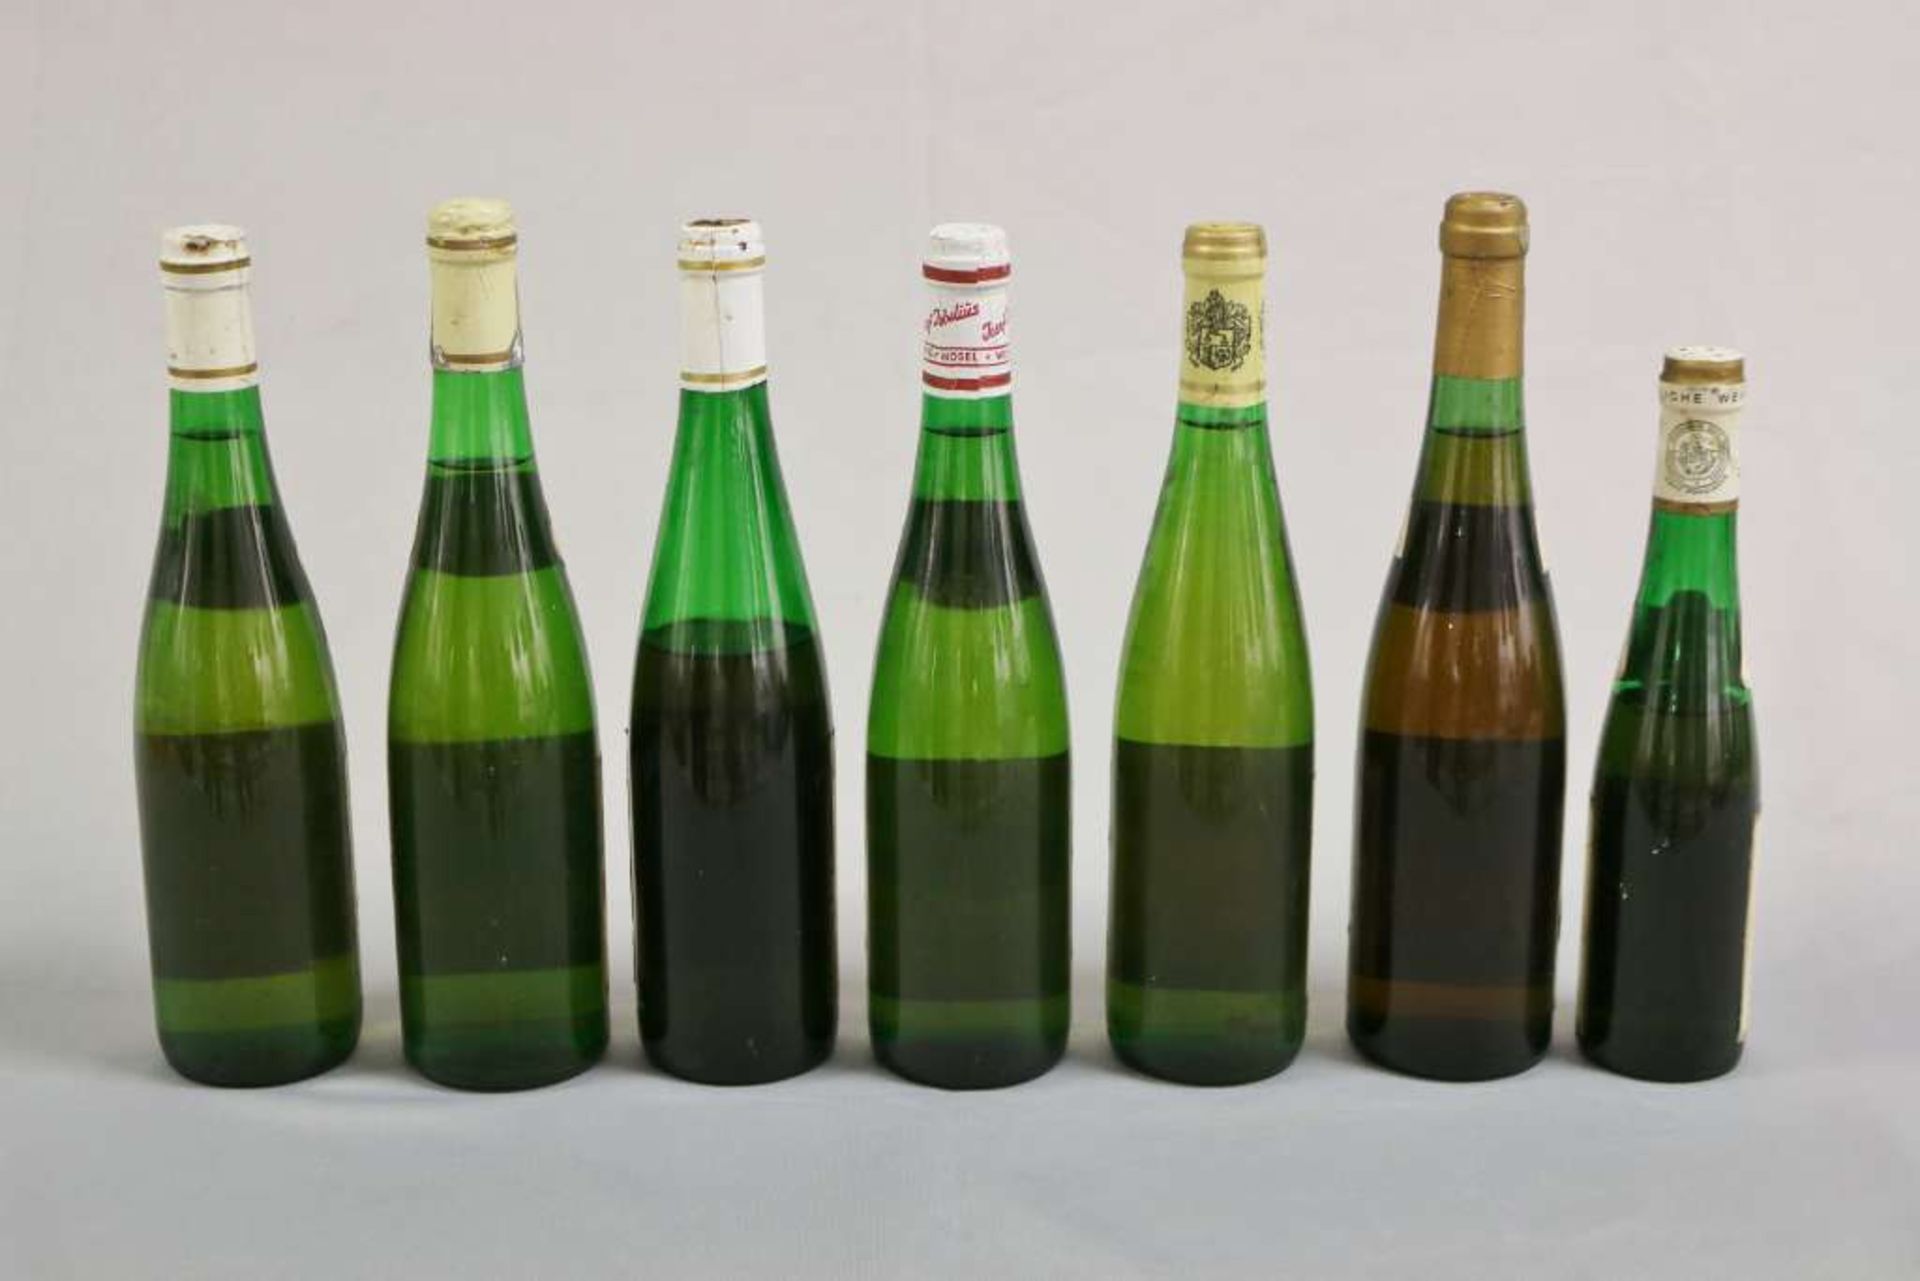 Weißwein u. Süßwein, 7 Flaschen, Mosel-Saar-Ruwer: Merler Königslay und Adler 1961 Beerenausleses; - Bild 2 aus 2